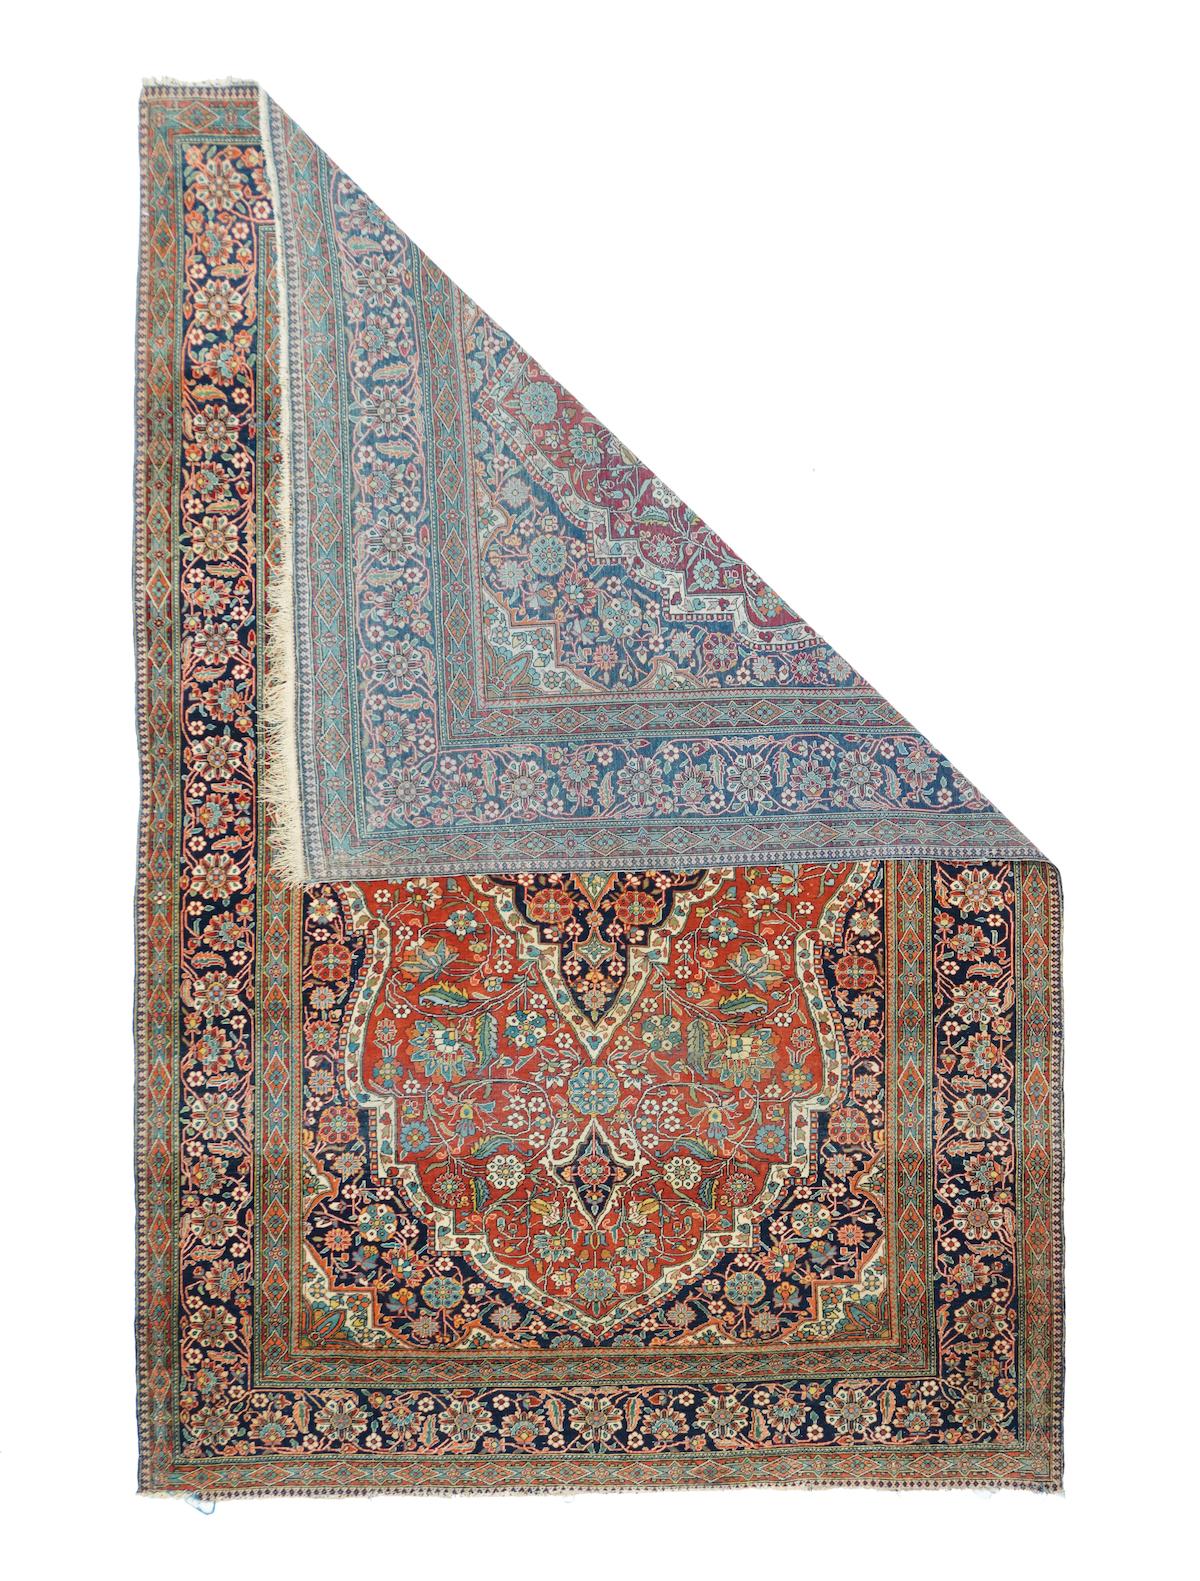 Antique Kashan rug 4'4'' x 6'7''. Well-designed 